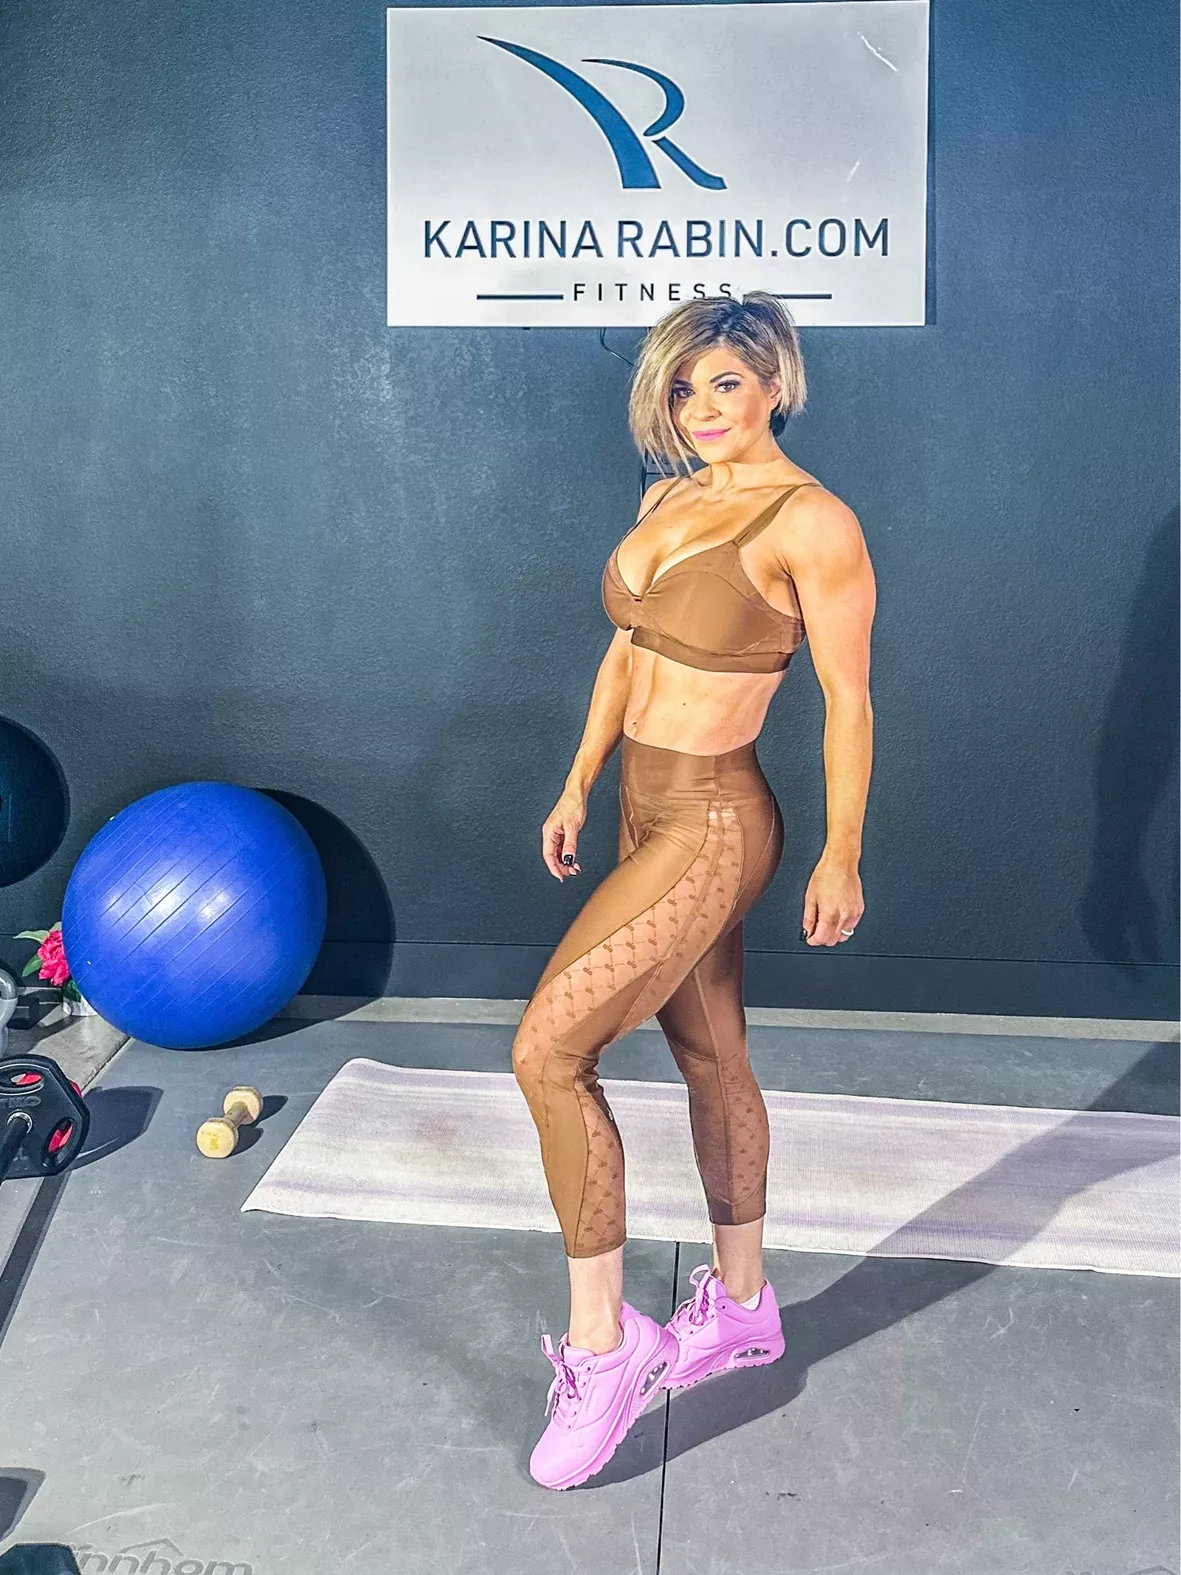 Sponsor Karina Rabin